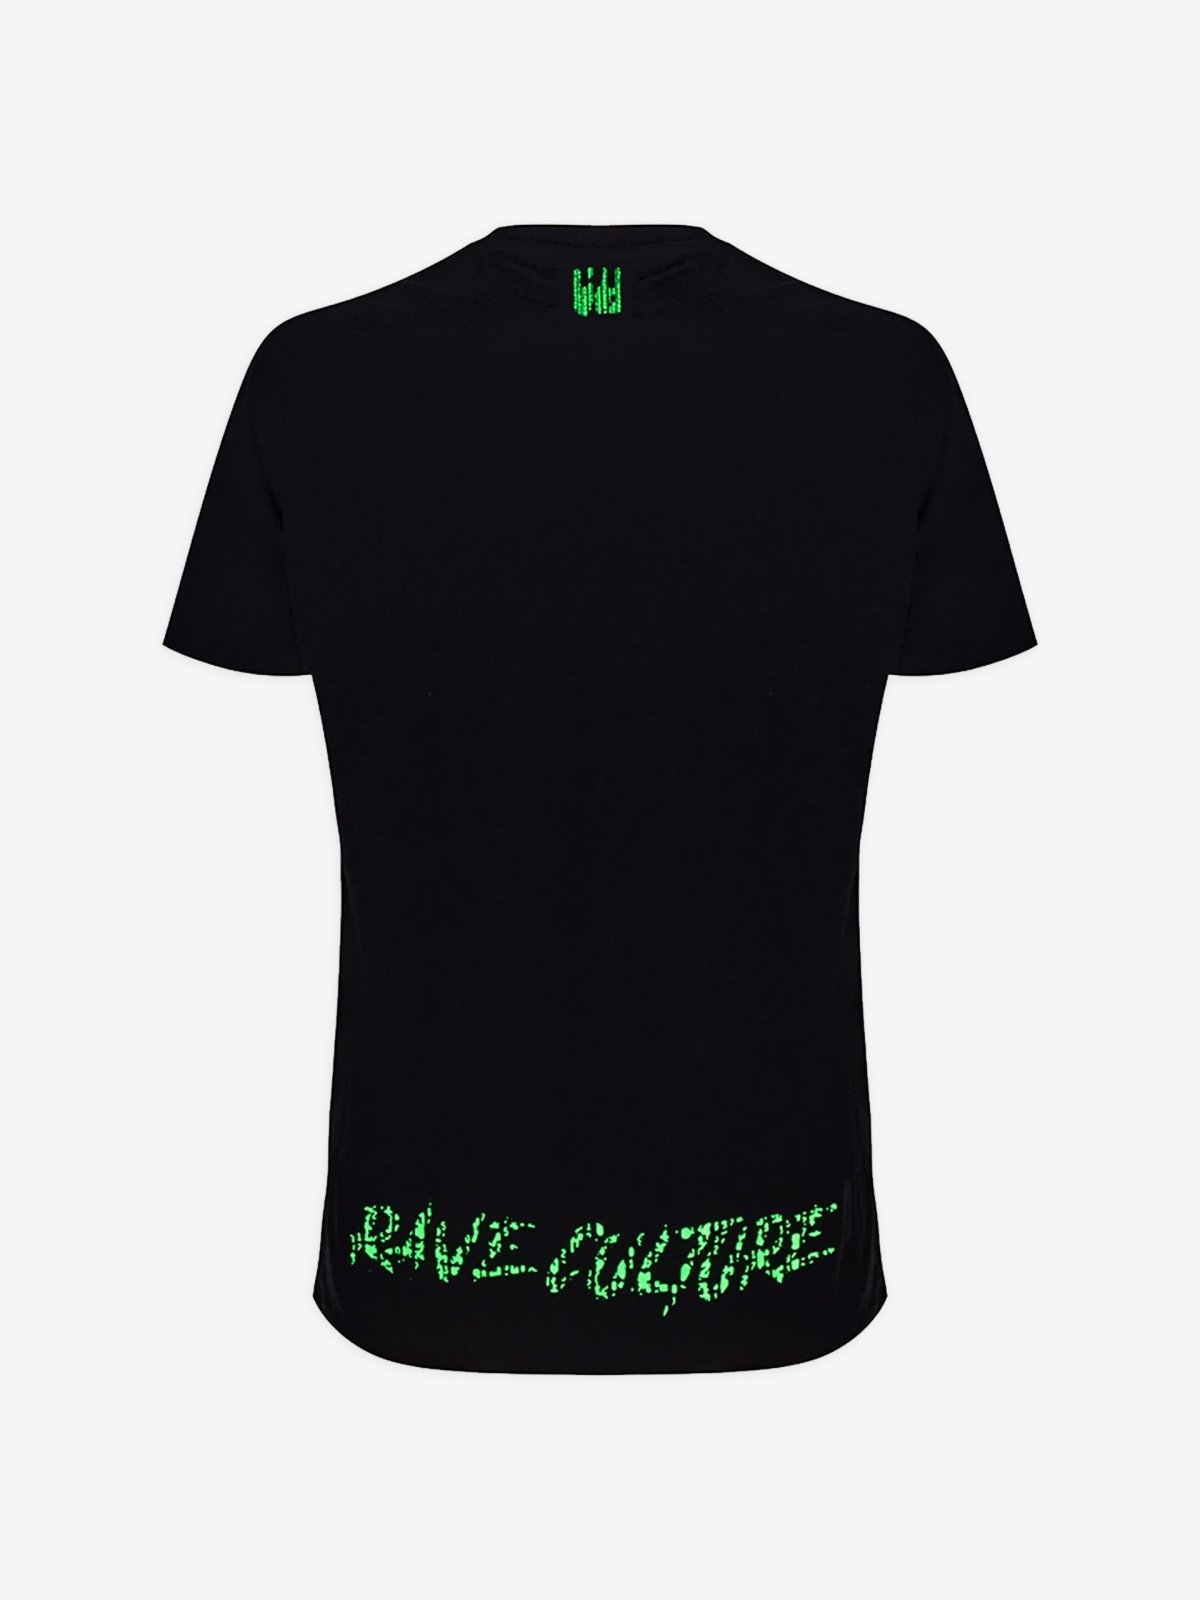 Rave Culture Matrix T-Shirt - Rave Culture Shop